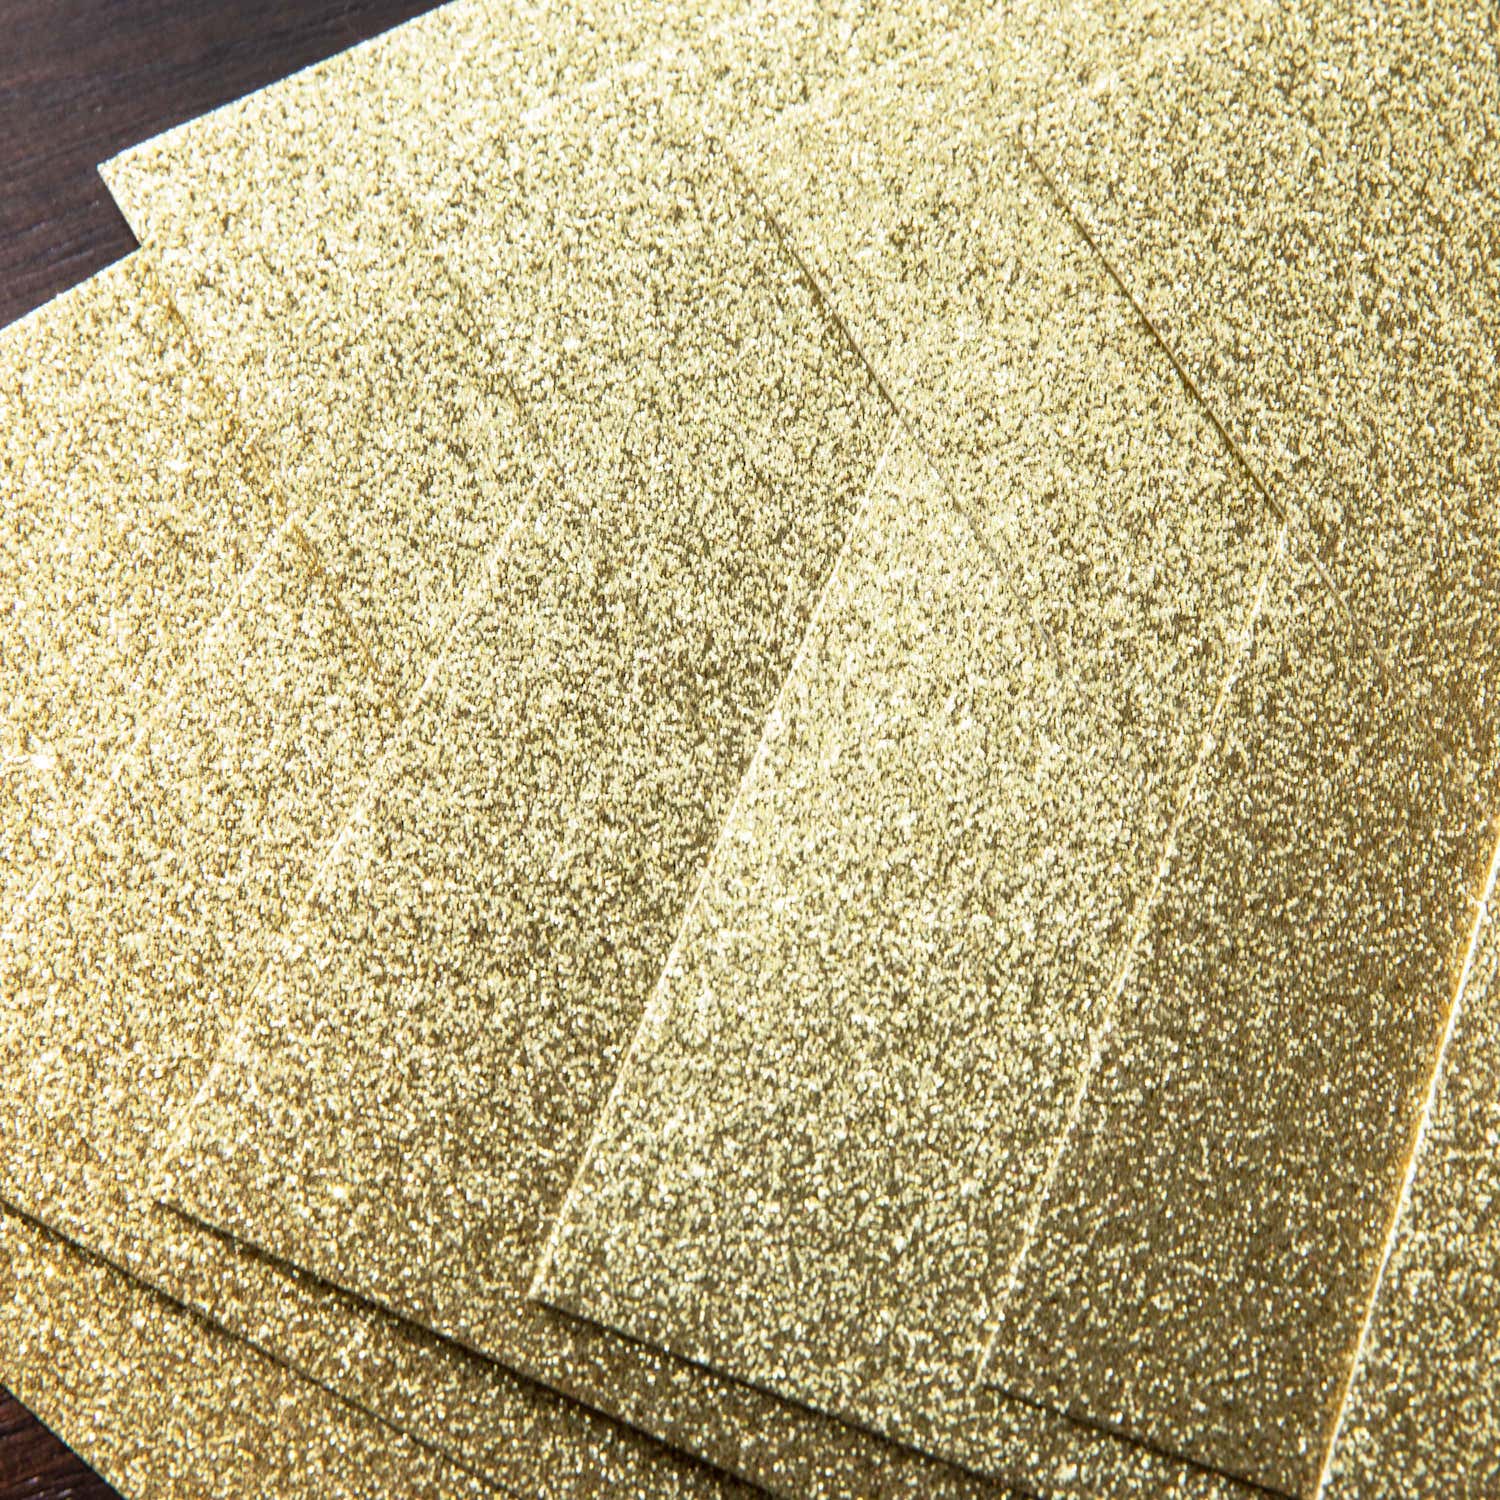 Glitter Cardstock Dark Gold Cover Sheets Bulk Pack of 15